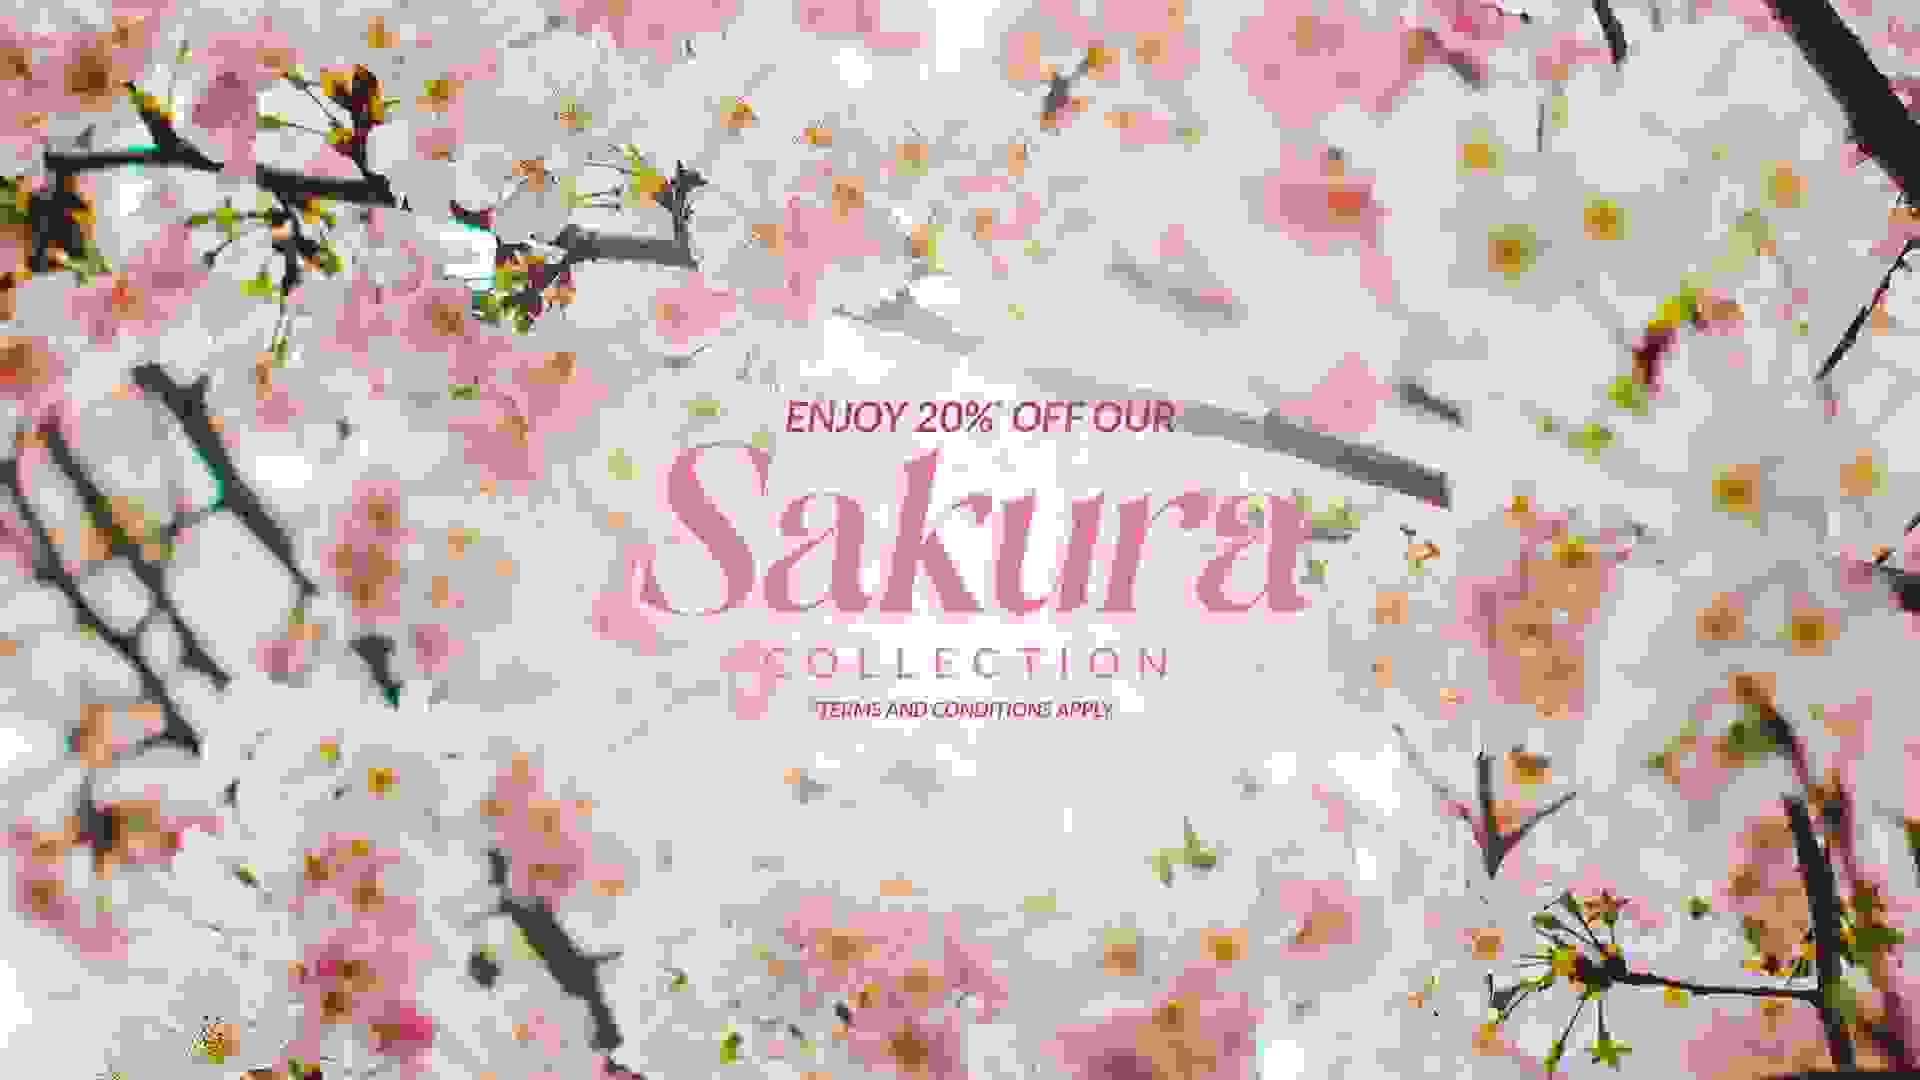 Enjoy 20% off our Sakura Collection!